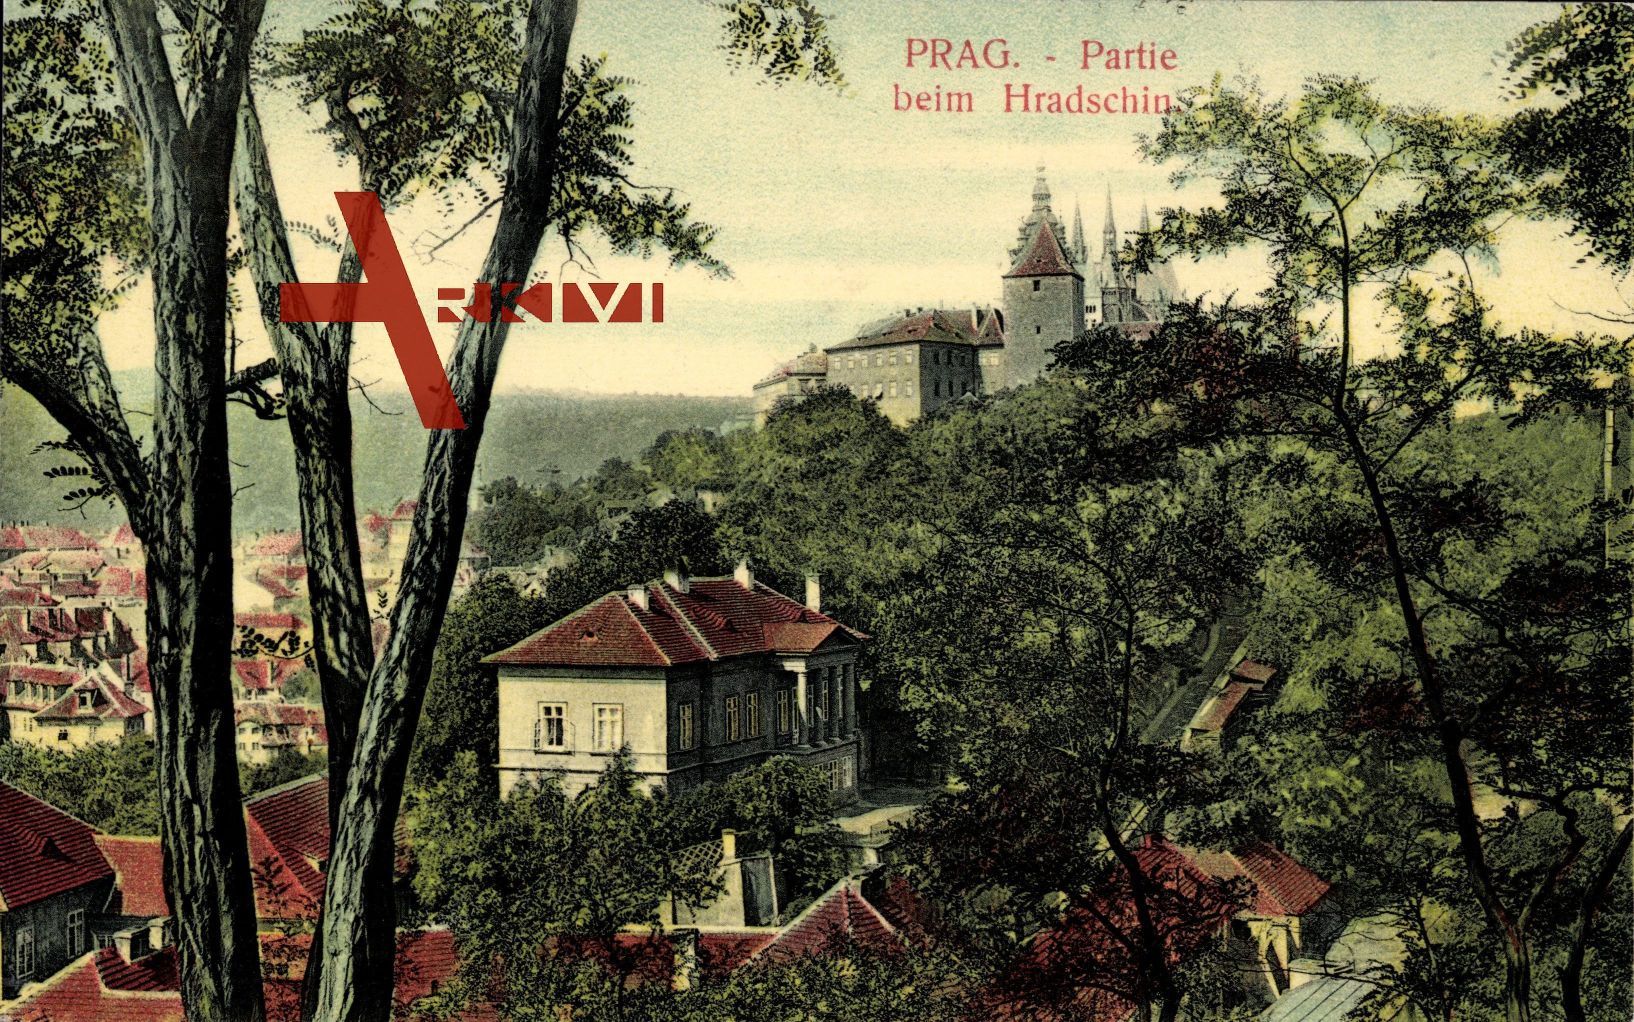 Praha Prag, Partie beim Hradschin, Schloss, Teilansicht des Ortes